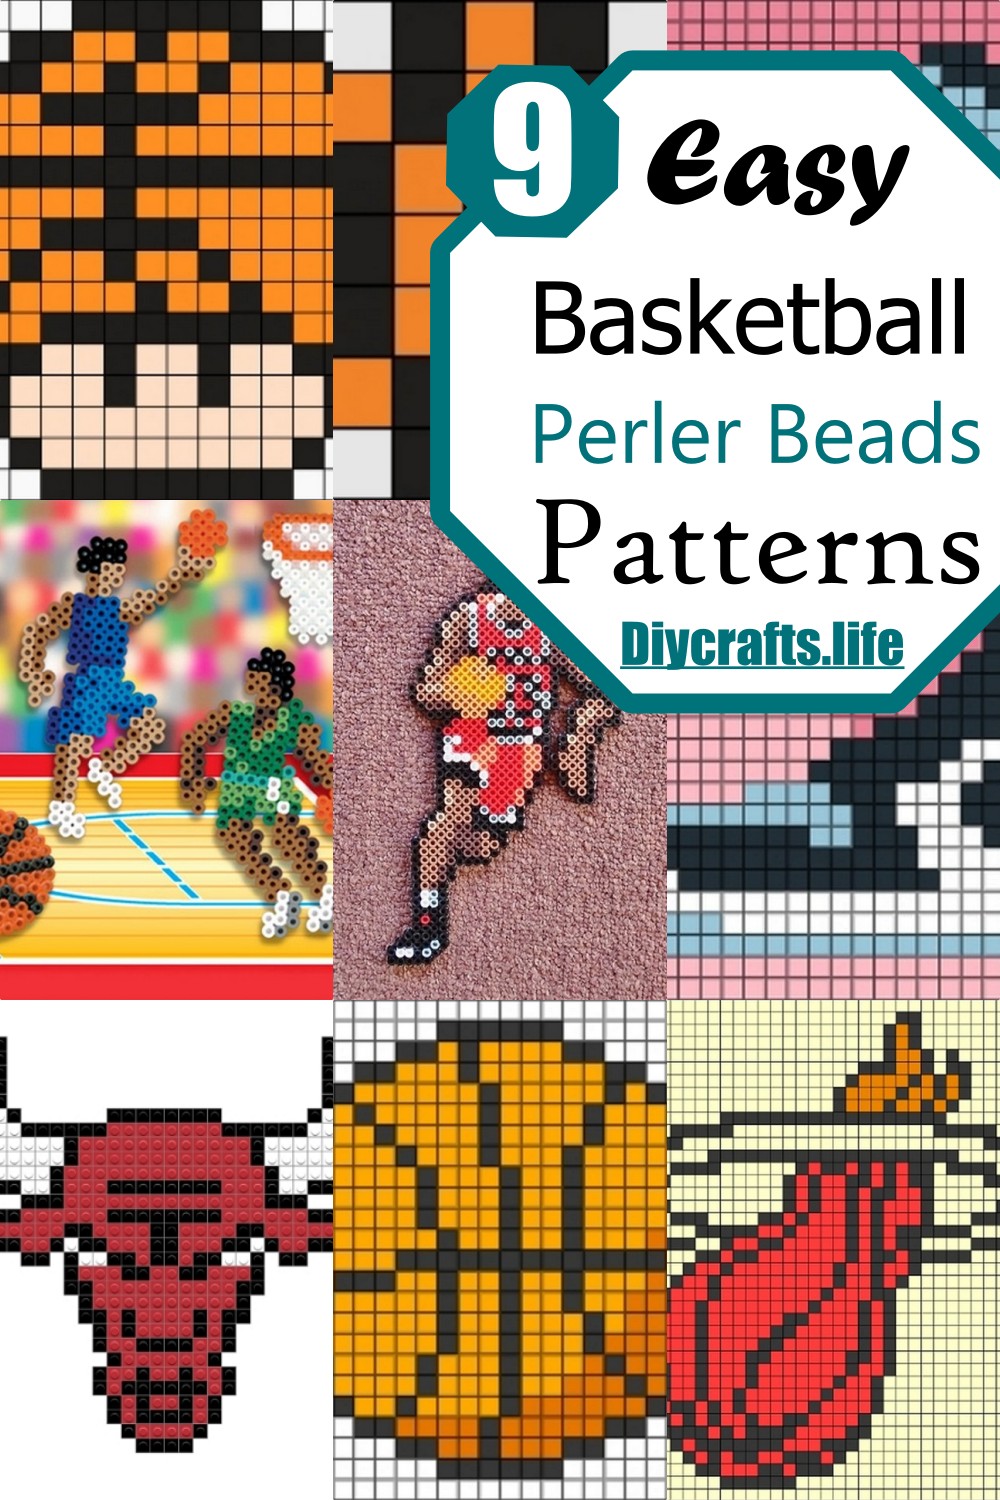 Easy Basketball Perler Beads Patterns